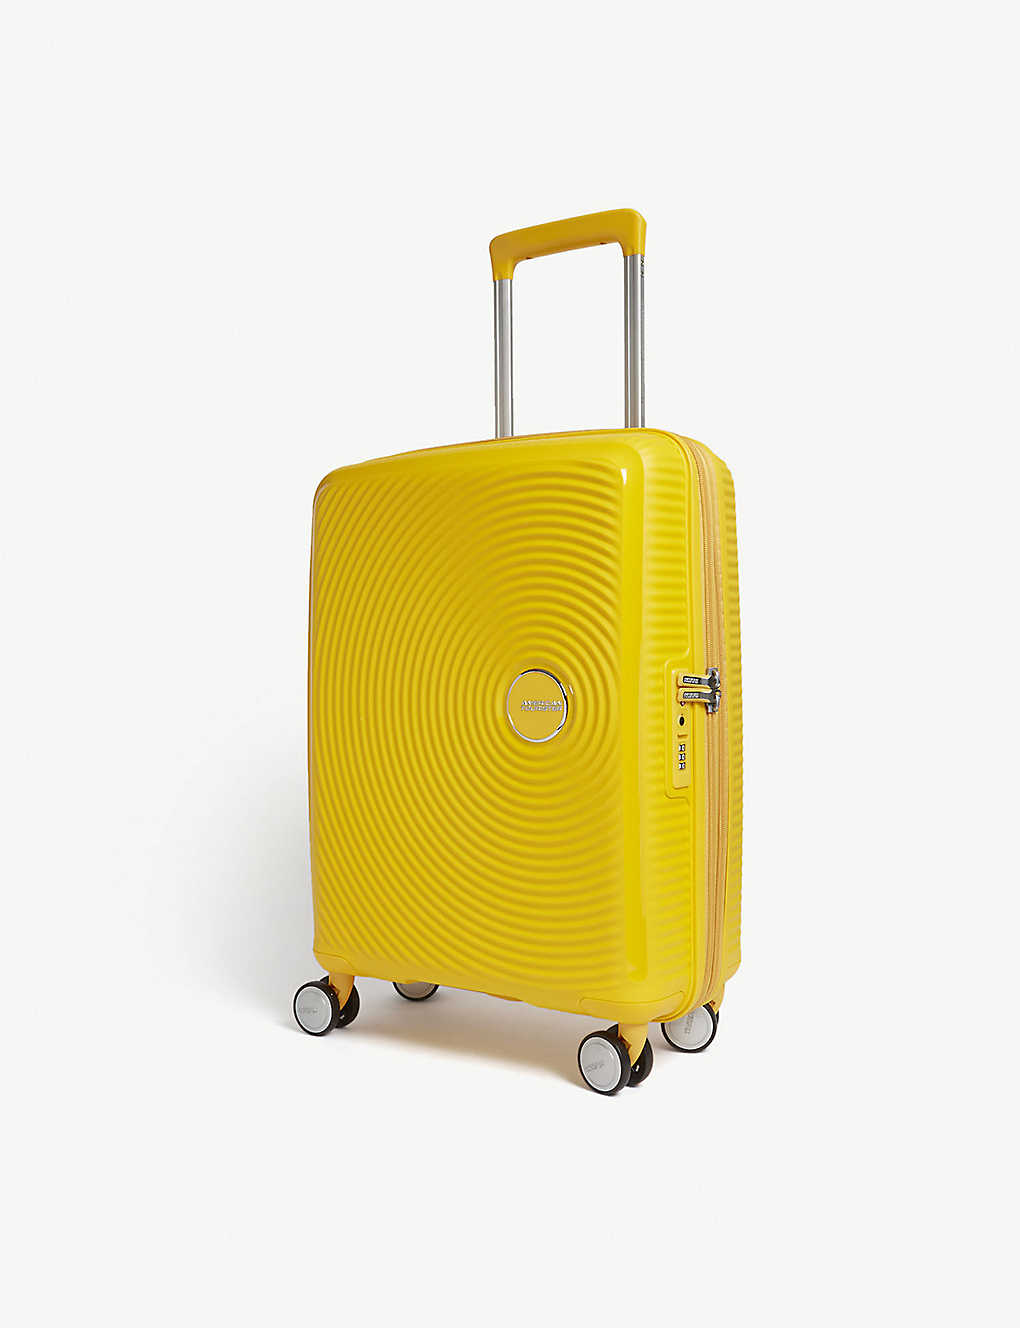 AMERICAN TOURISTER
Soundbox expandable four-wheel cabin suitcase 55cm